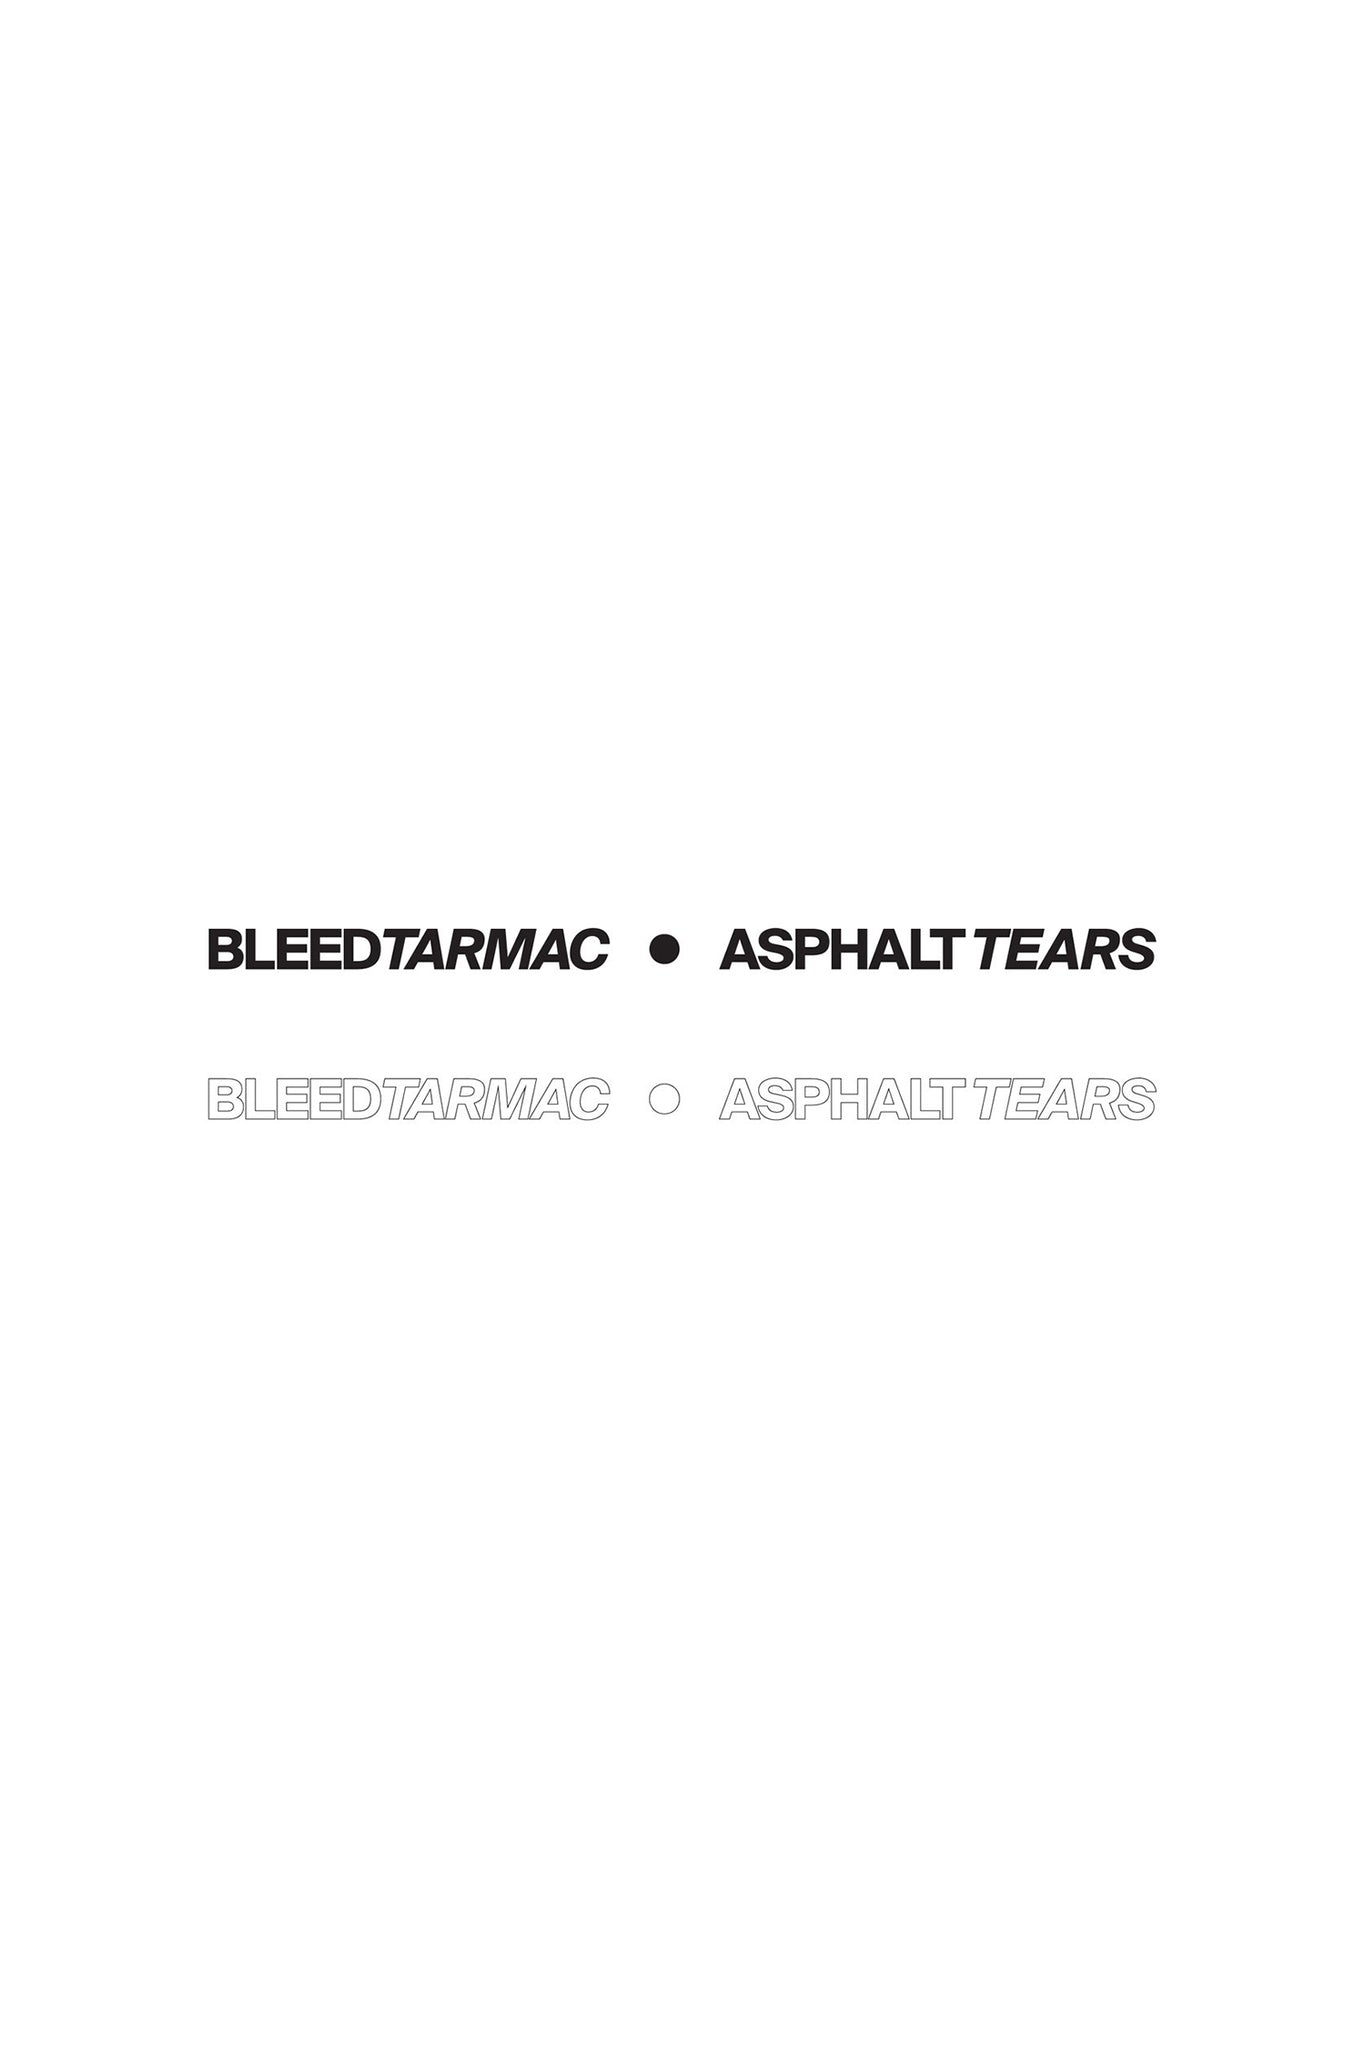 Bleed Tarmac : Asphalt Tears Decal